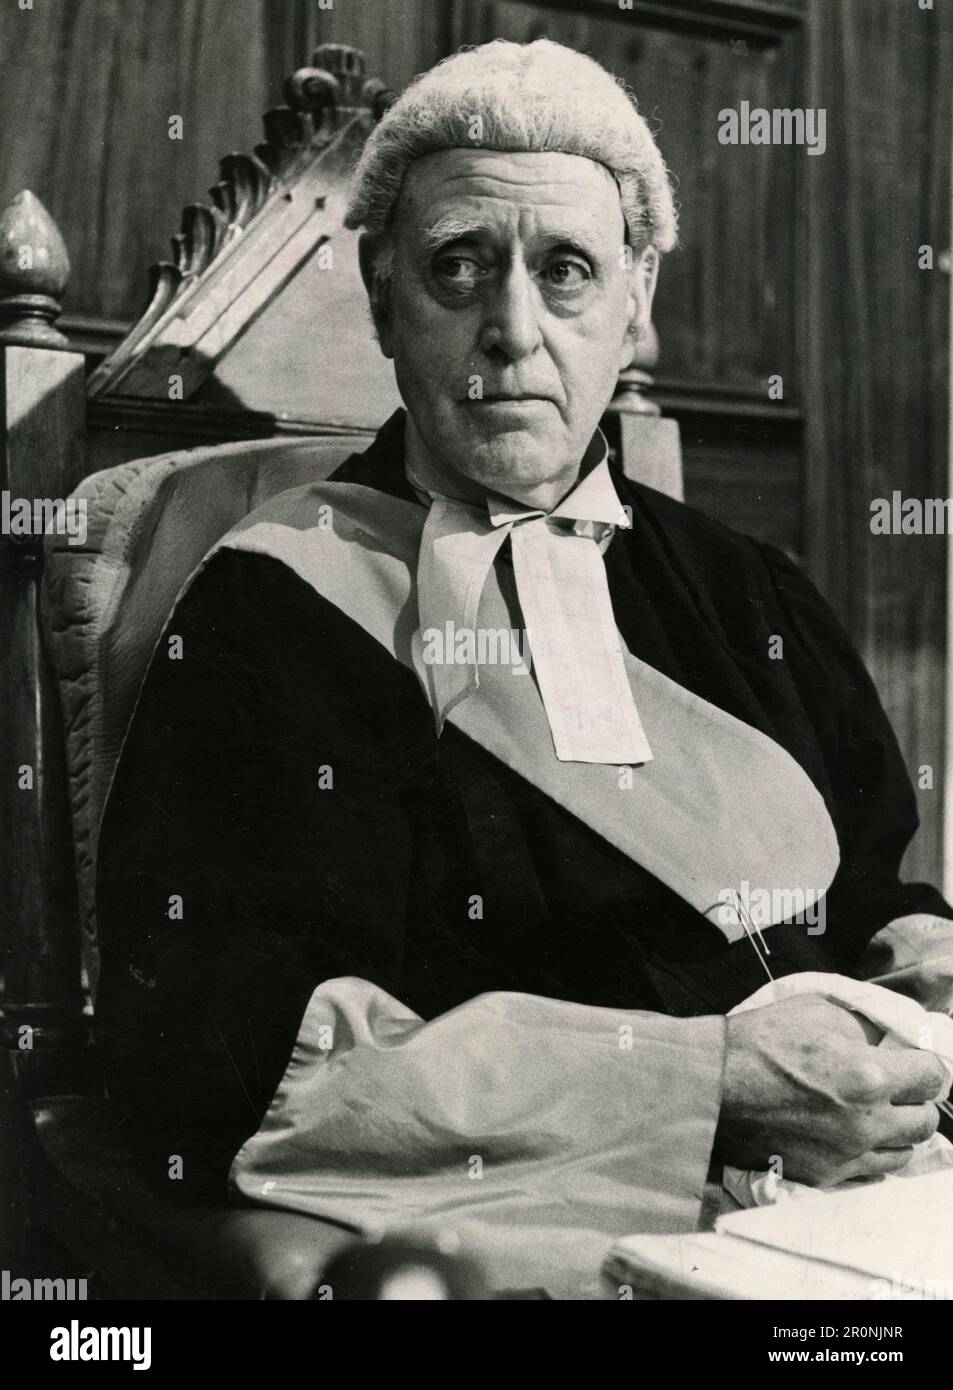 Attore Alastair SIM nella serie TV casi fuorvianti, Regno Unito 1968 Foto Stock